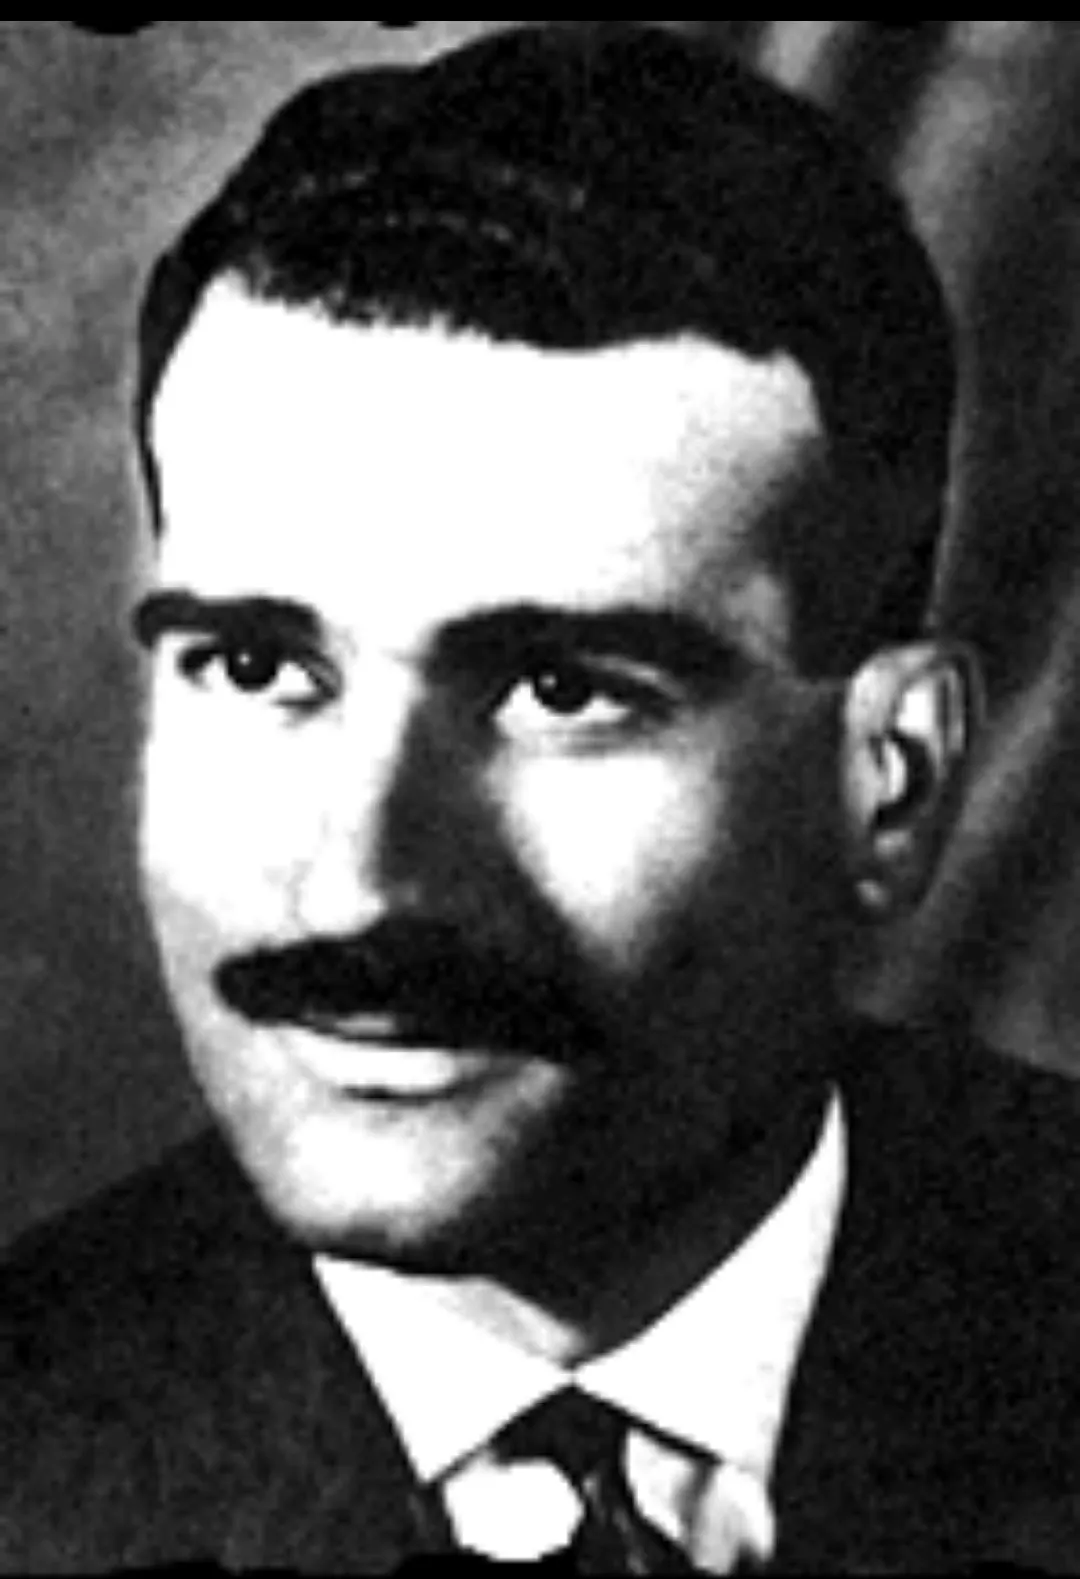 Mata-mata Mossad, Eli Cohen